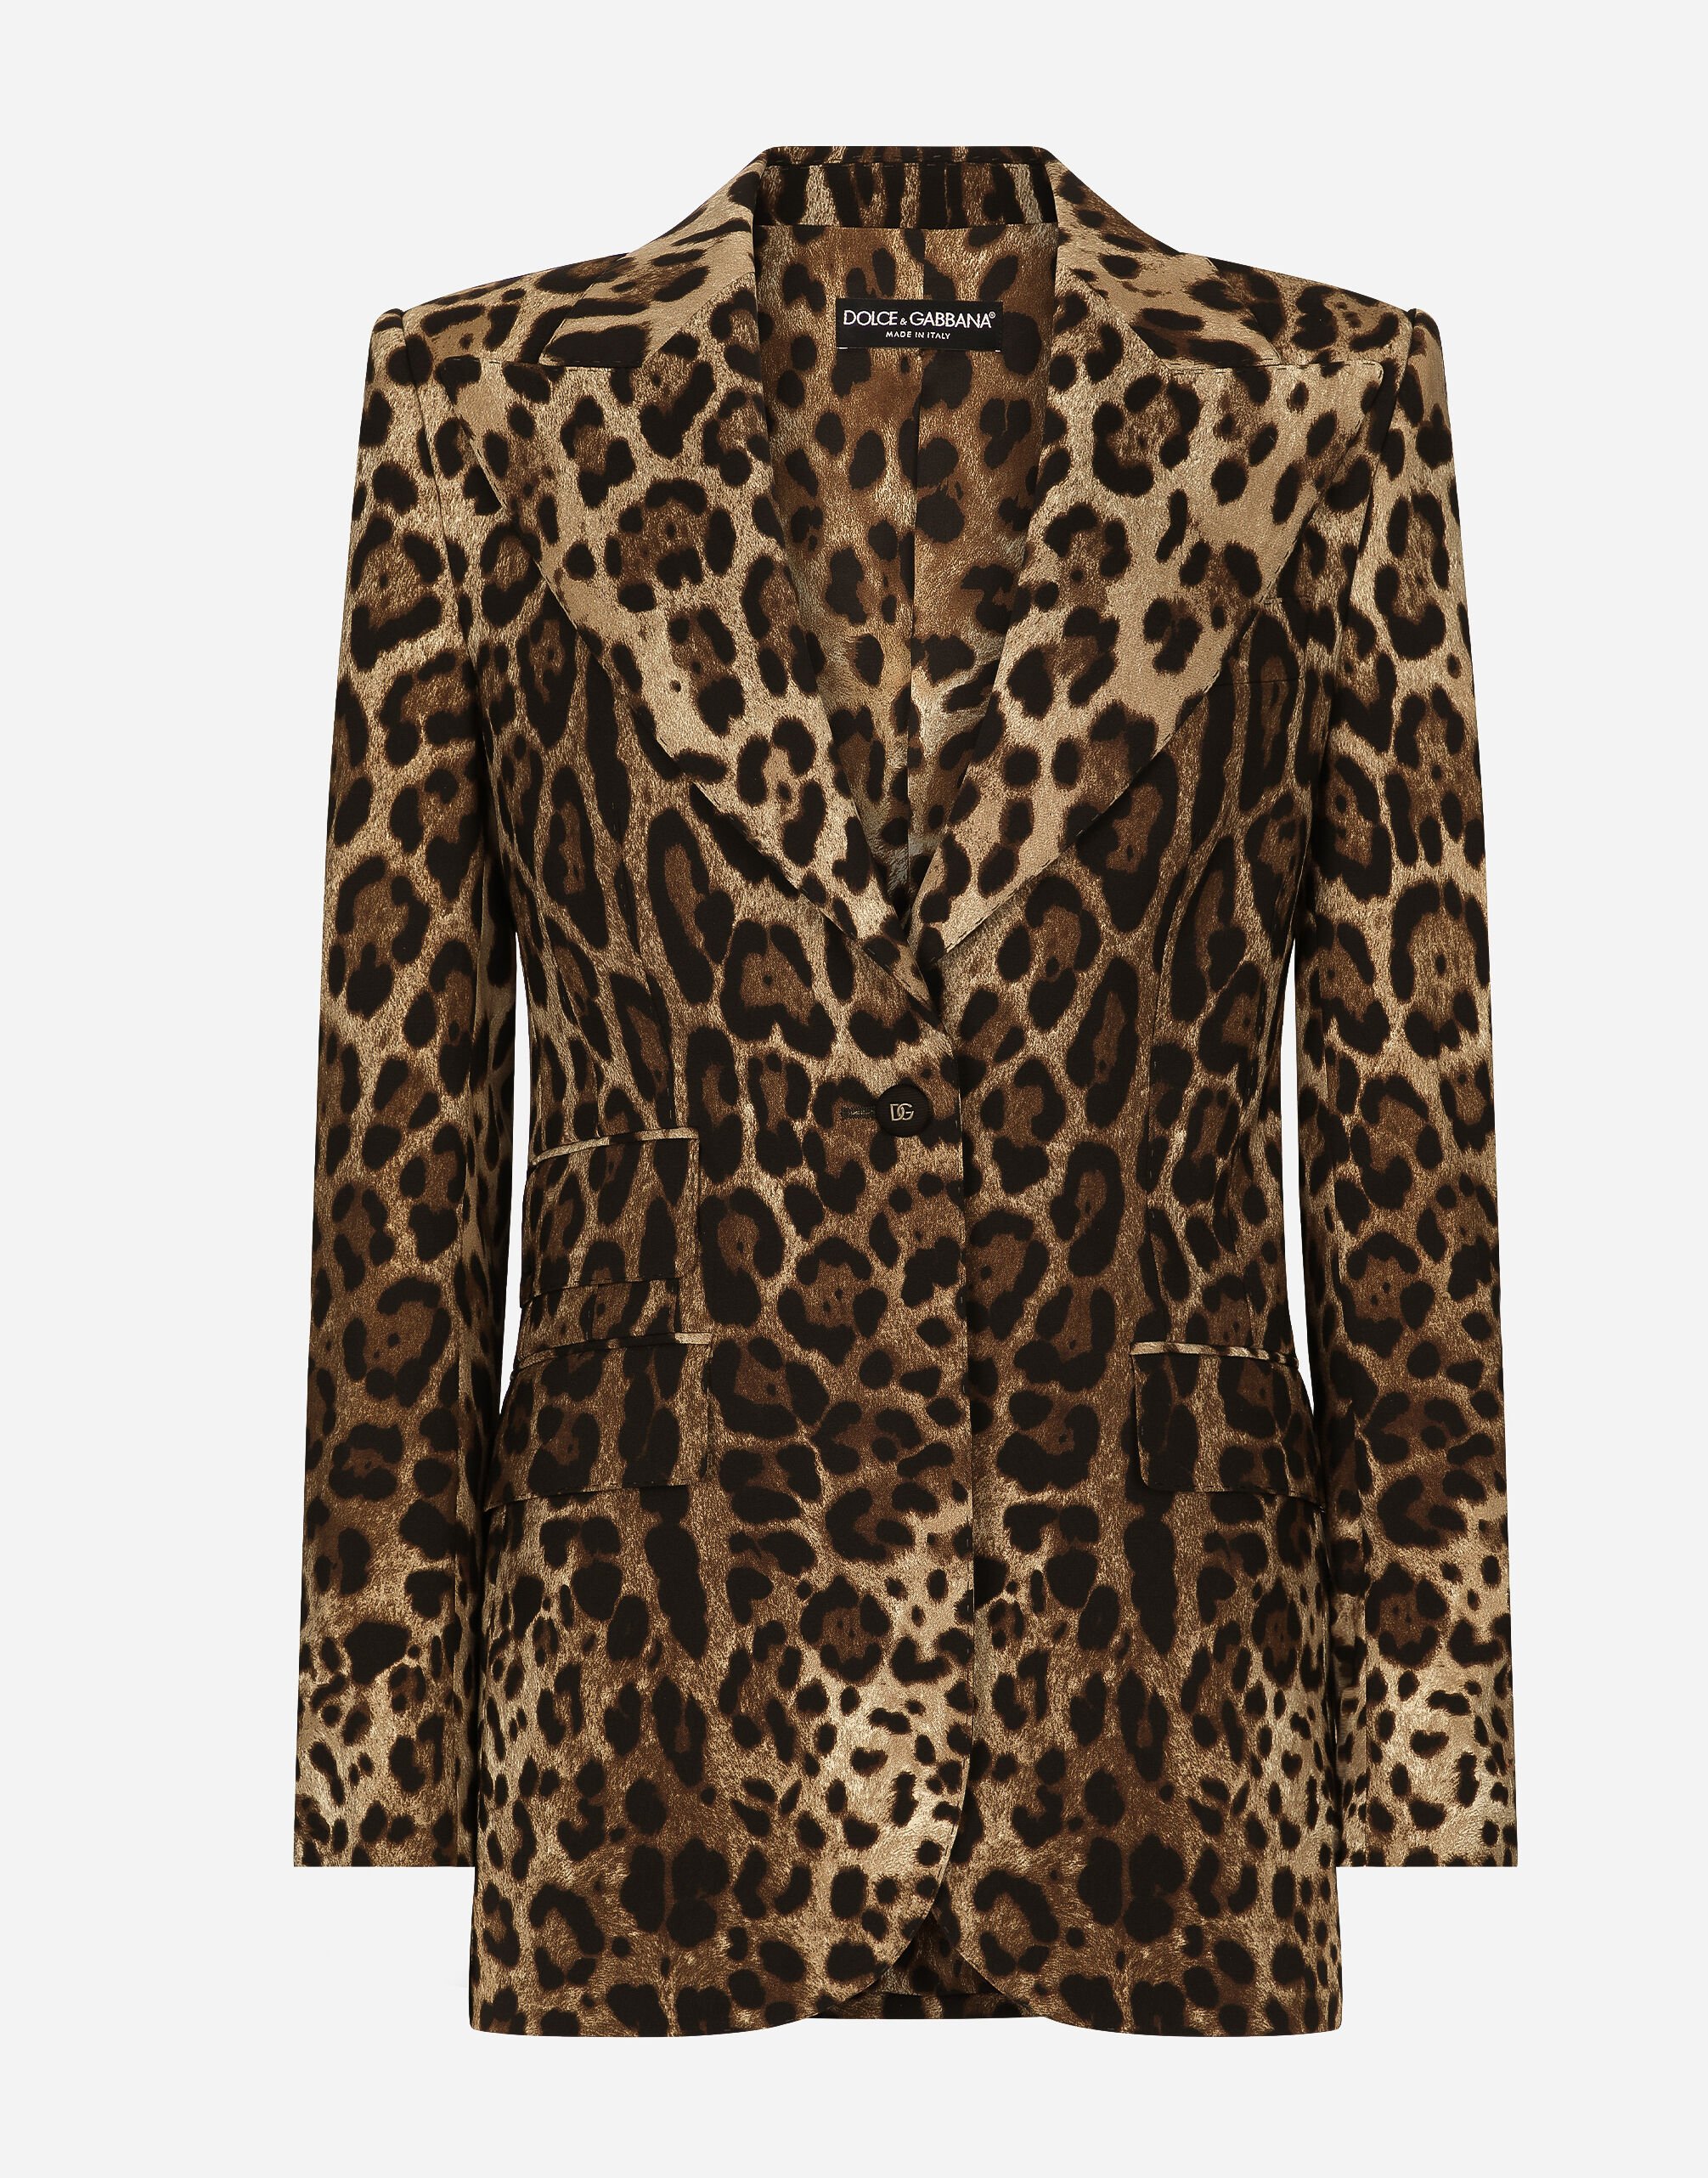 Dolce&Gabbana Leopard-print wool Turlington jacket Animal Print F9R11THSMW8